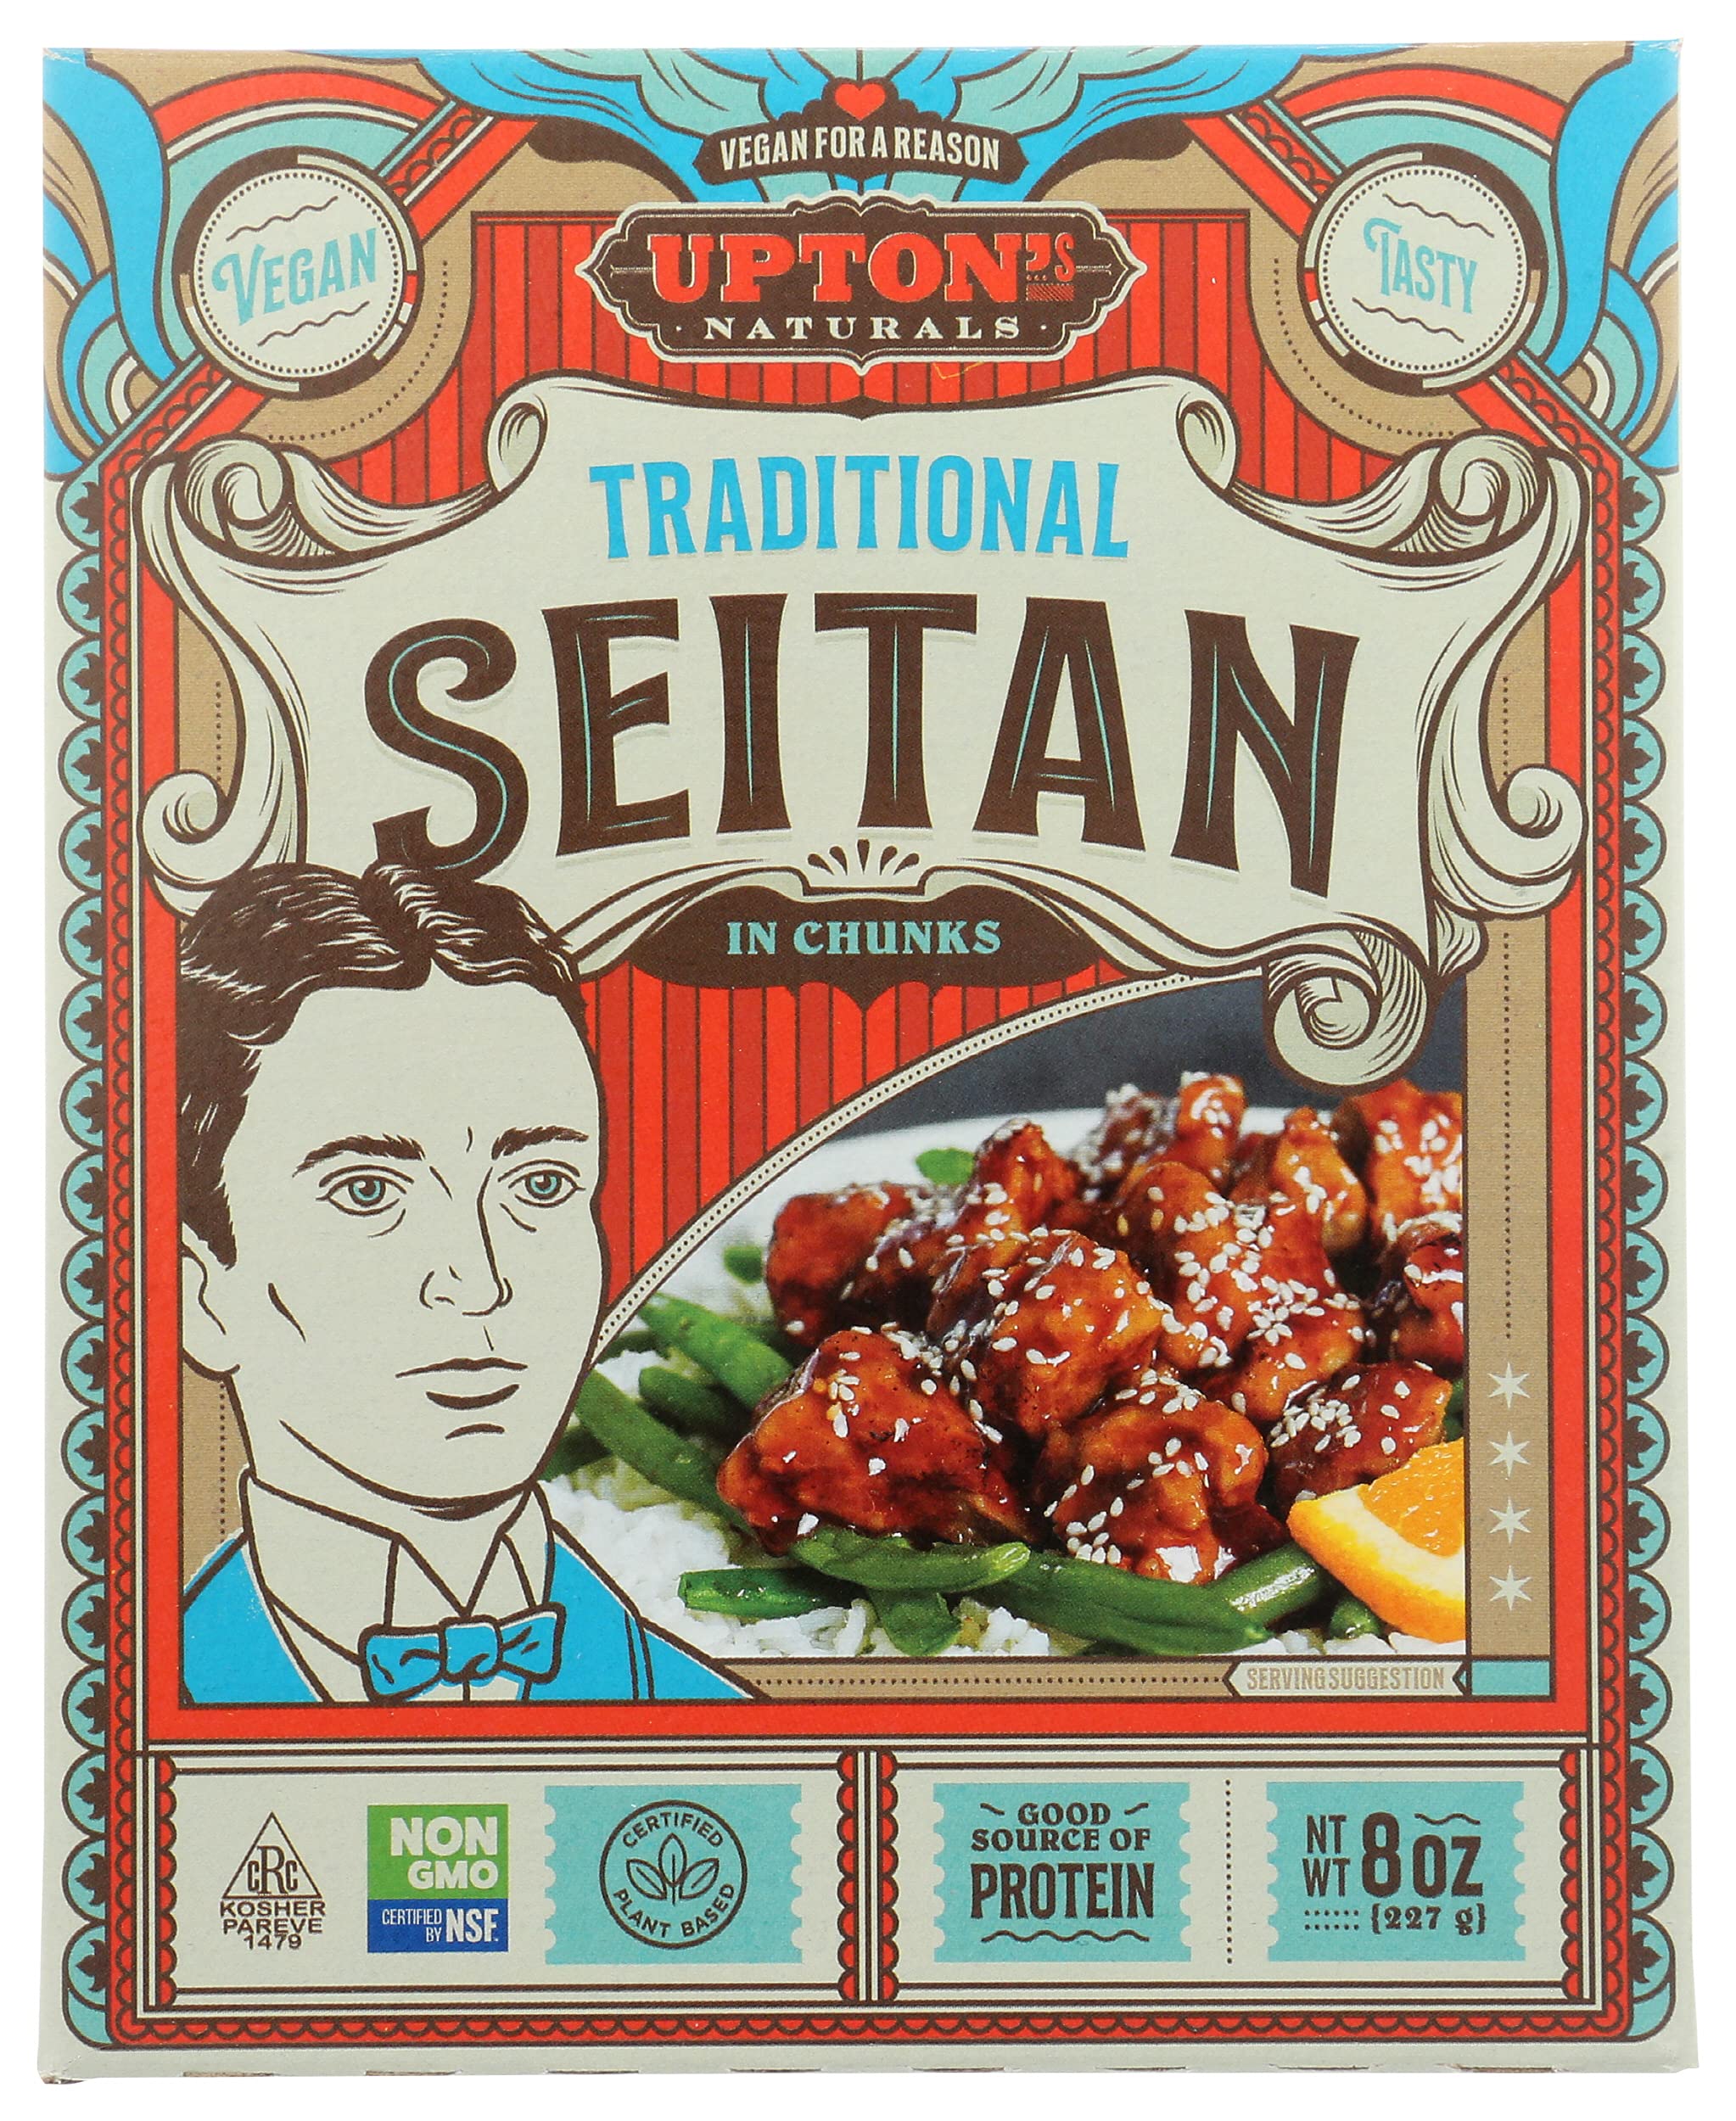 Upton's Traditional Seitan